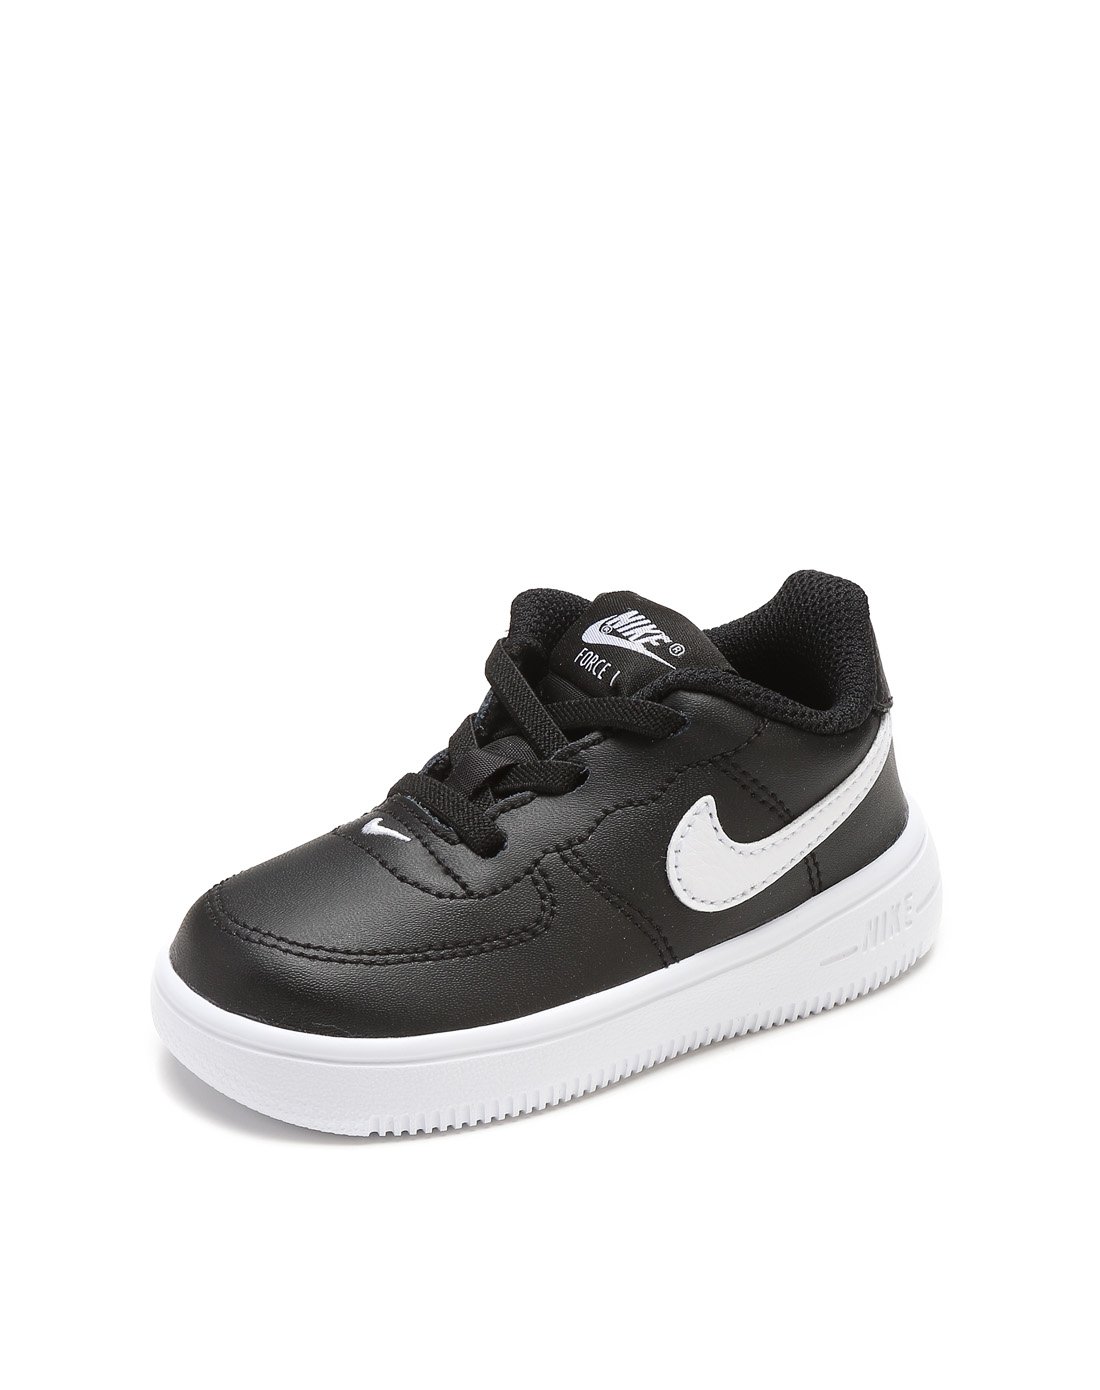 10点：118元包邮  Nike 耐克 Force 1 '18 (TD) 婴童运动童鞋